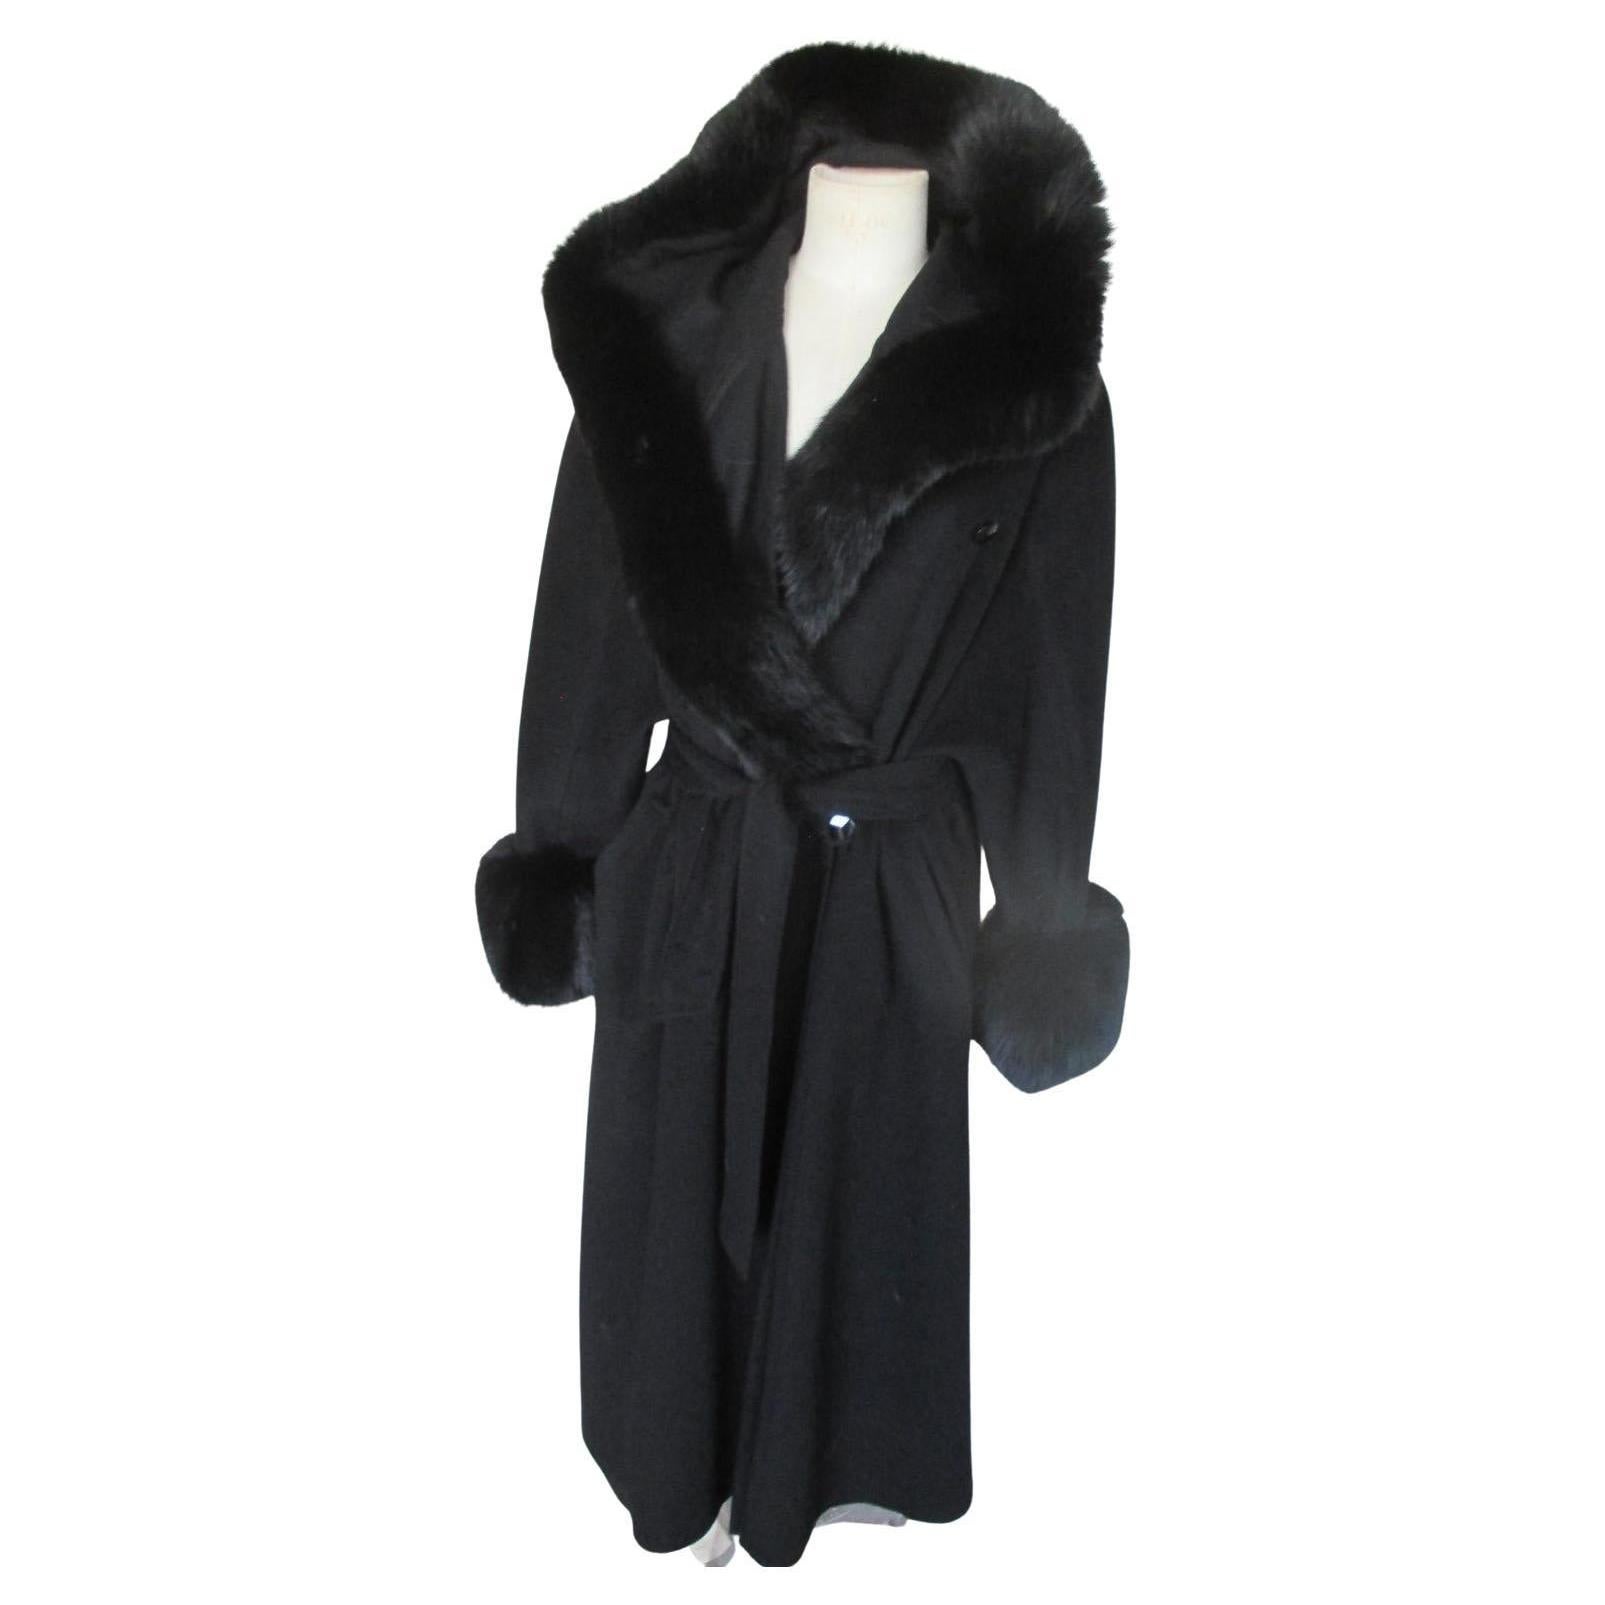  Elegance Black Cashmere Fox Fur Flared Hooded Coat (manteau à capuche évasé en fourrure de renard)